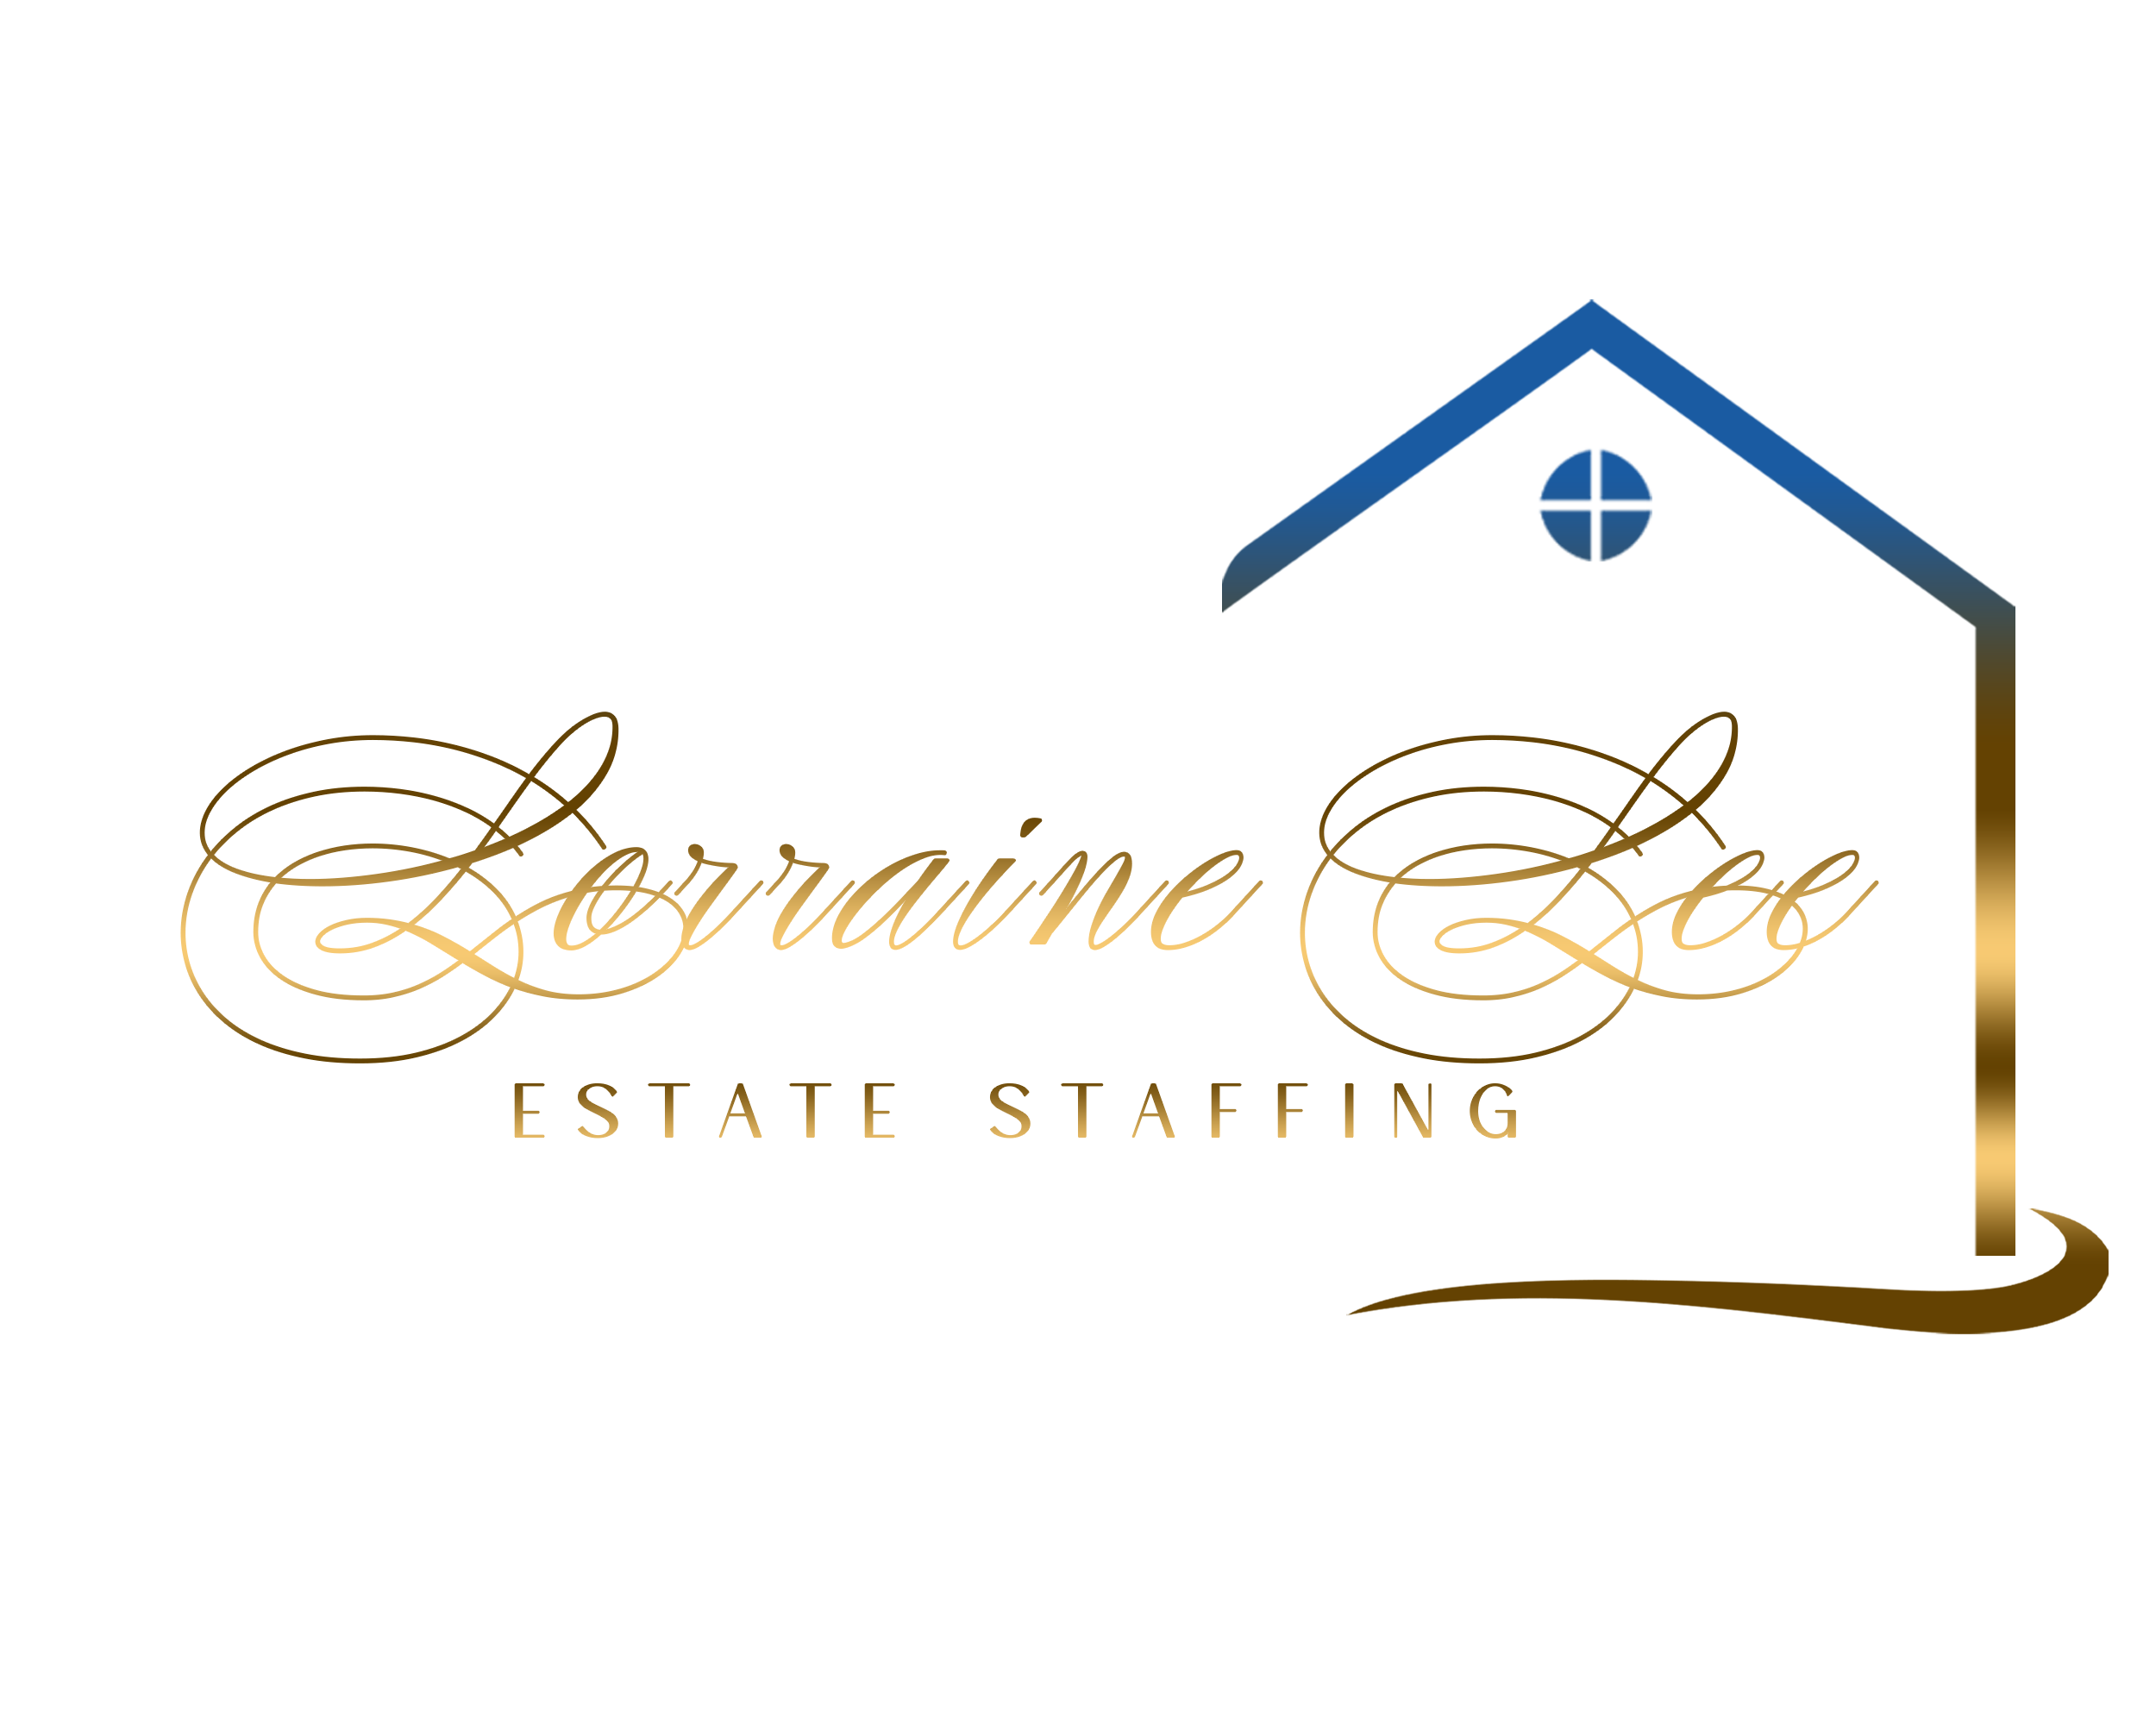 Lorraine Lee Estate Staffing